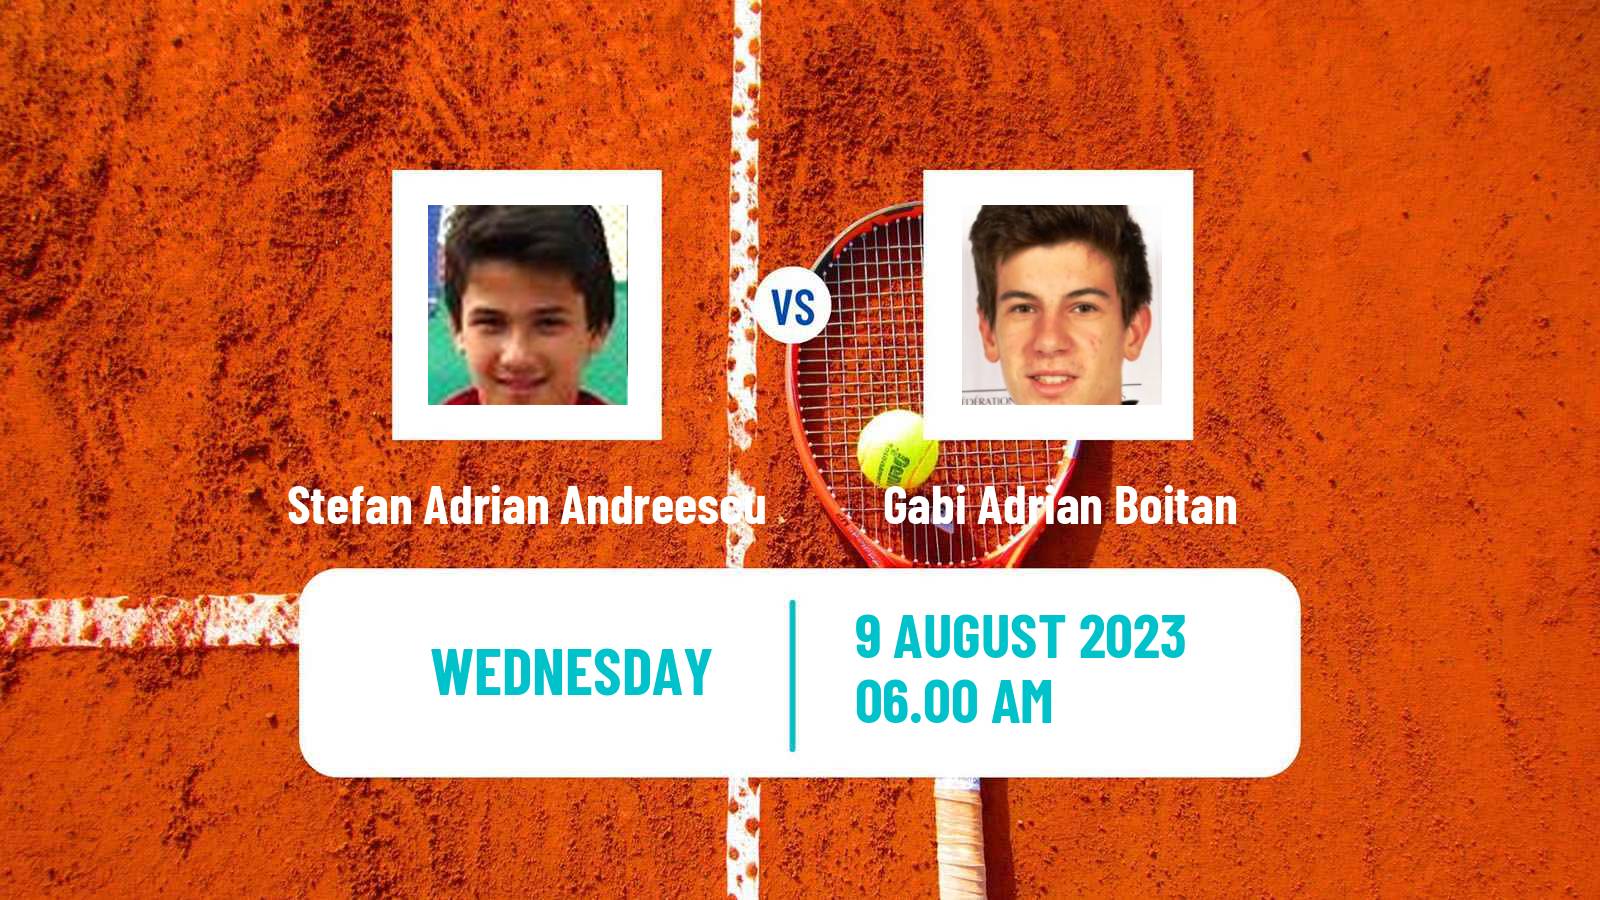 Tennis ITF M15 Curtea De Arges Men Stefan Adrian Andreescu - Gabi Adrian Boitan